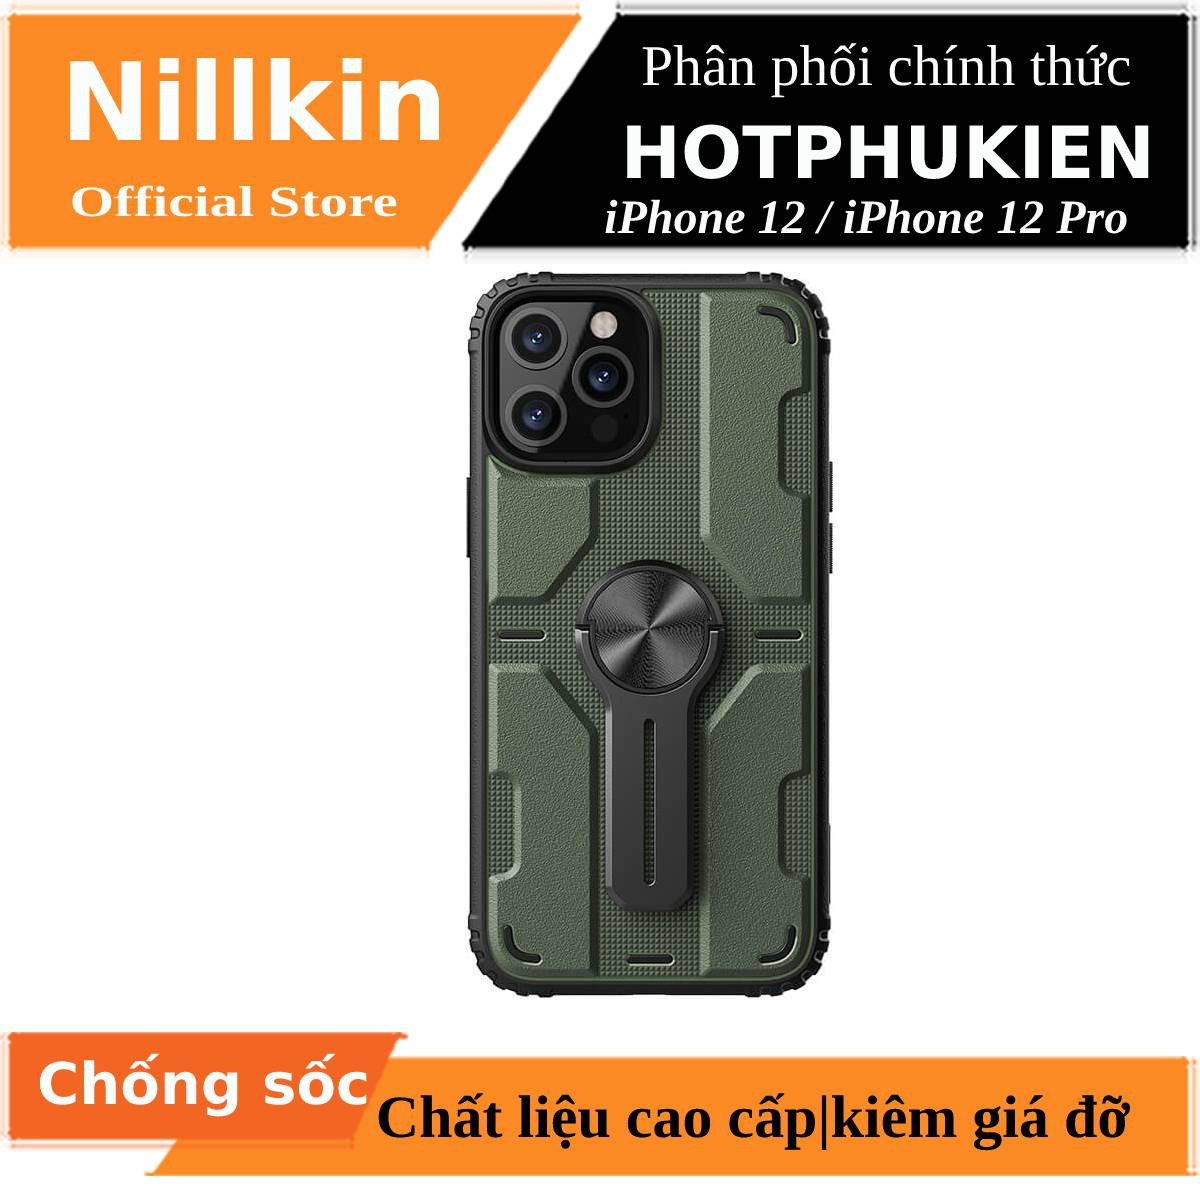 Ốp lưng iPhone 12 / 12 Pro (6.1 icnh) chống sốc kiêm giá đỡ hiệu Nillkin Medley